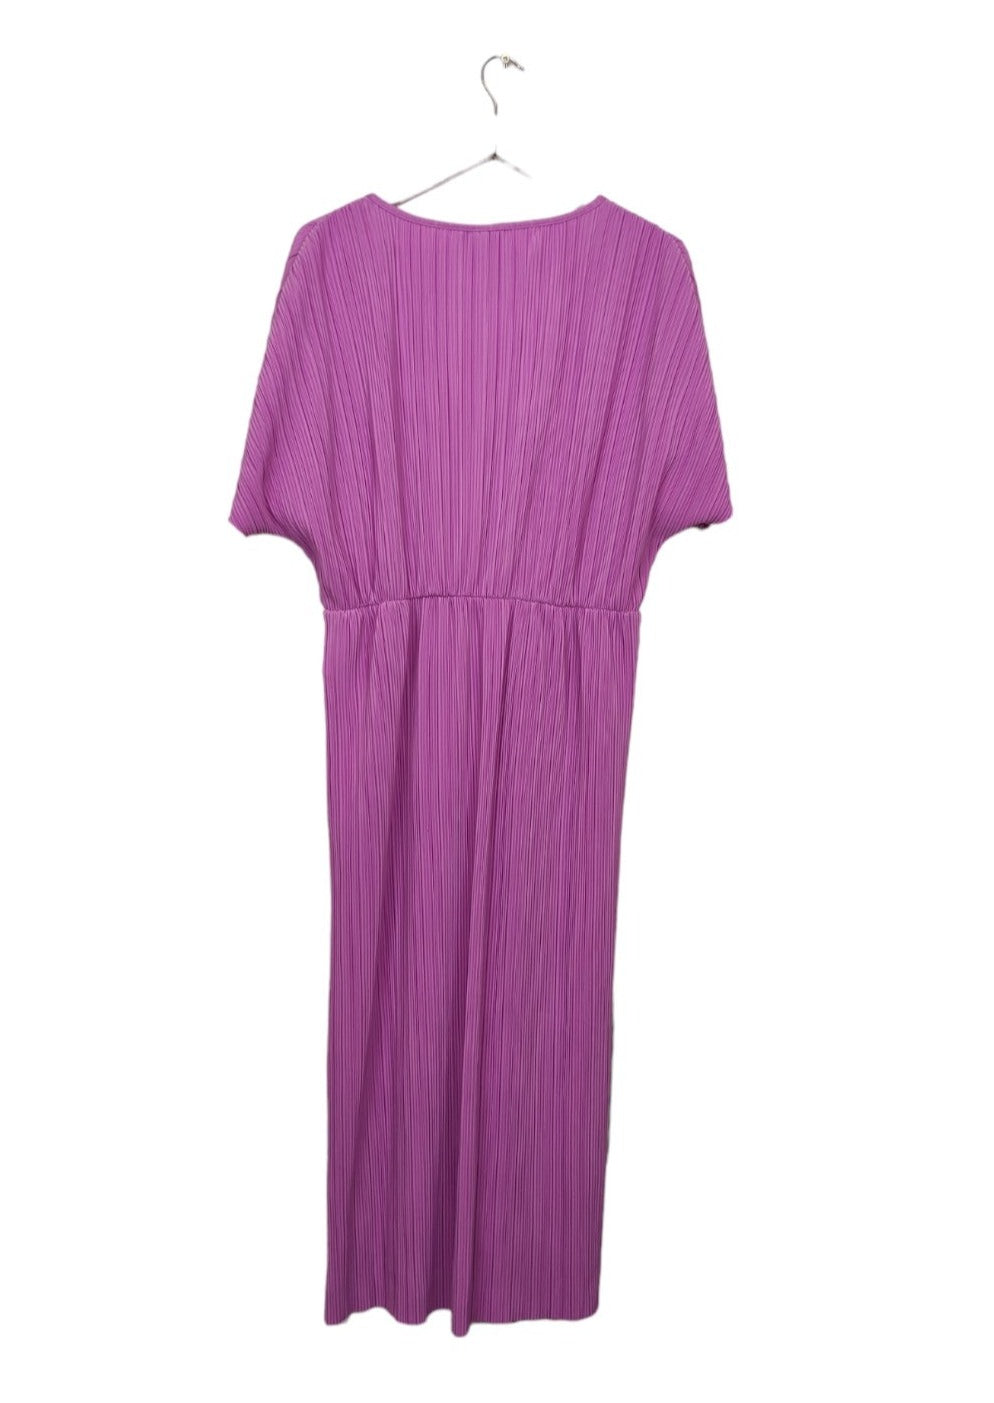 Outlet, Πλισέ Κοντομάνικο Φόρεμα VILA σε Ροζ χρώμα (Large)